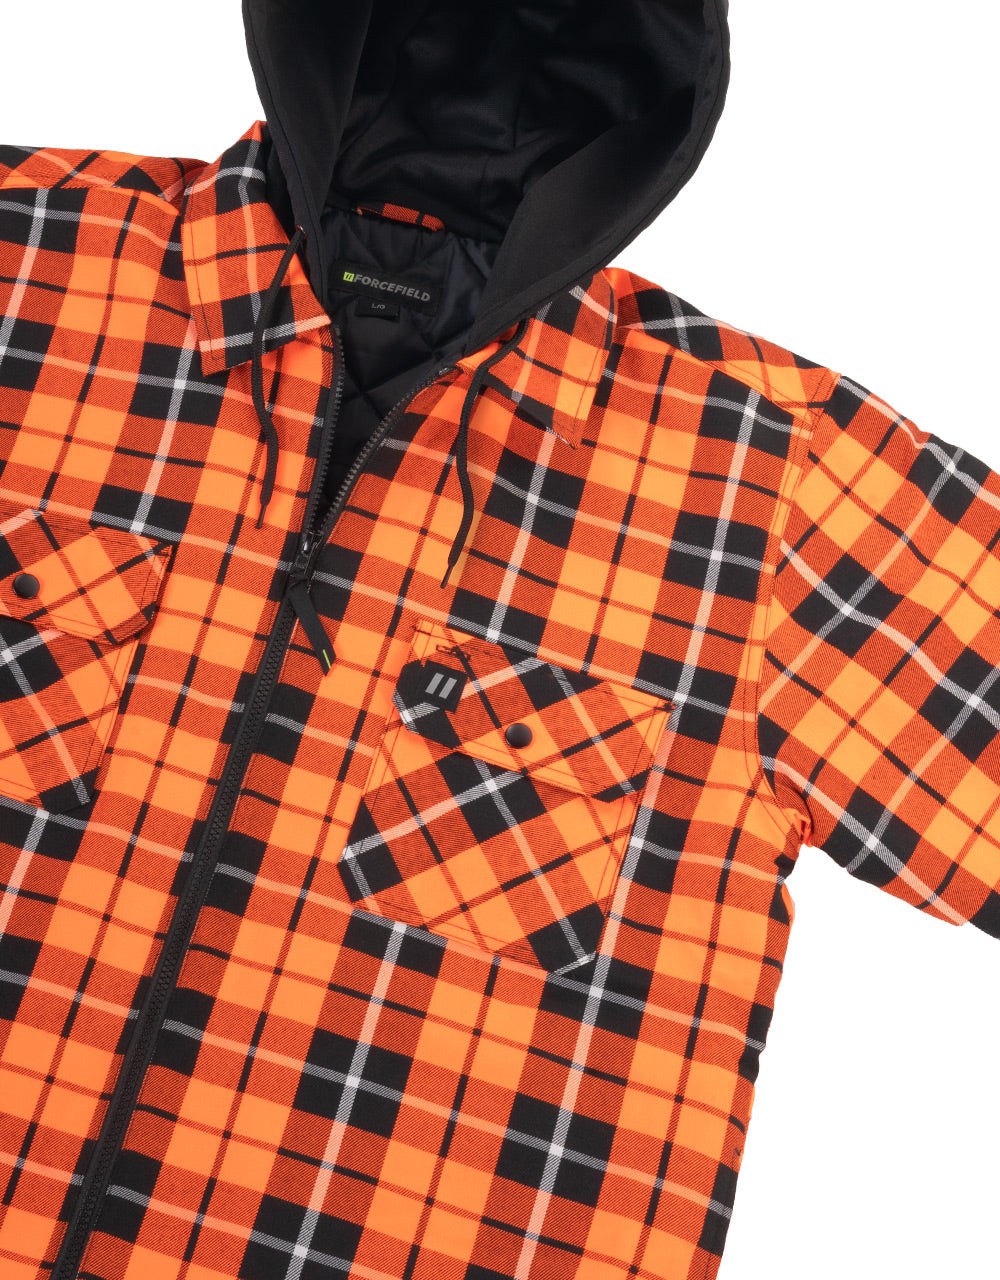 Veste-chemise en flanelle à capuche et à carreaux tartan orange haute visibilité, doublée de couette et zippée sur le devant 